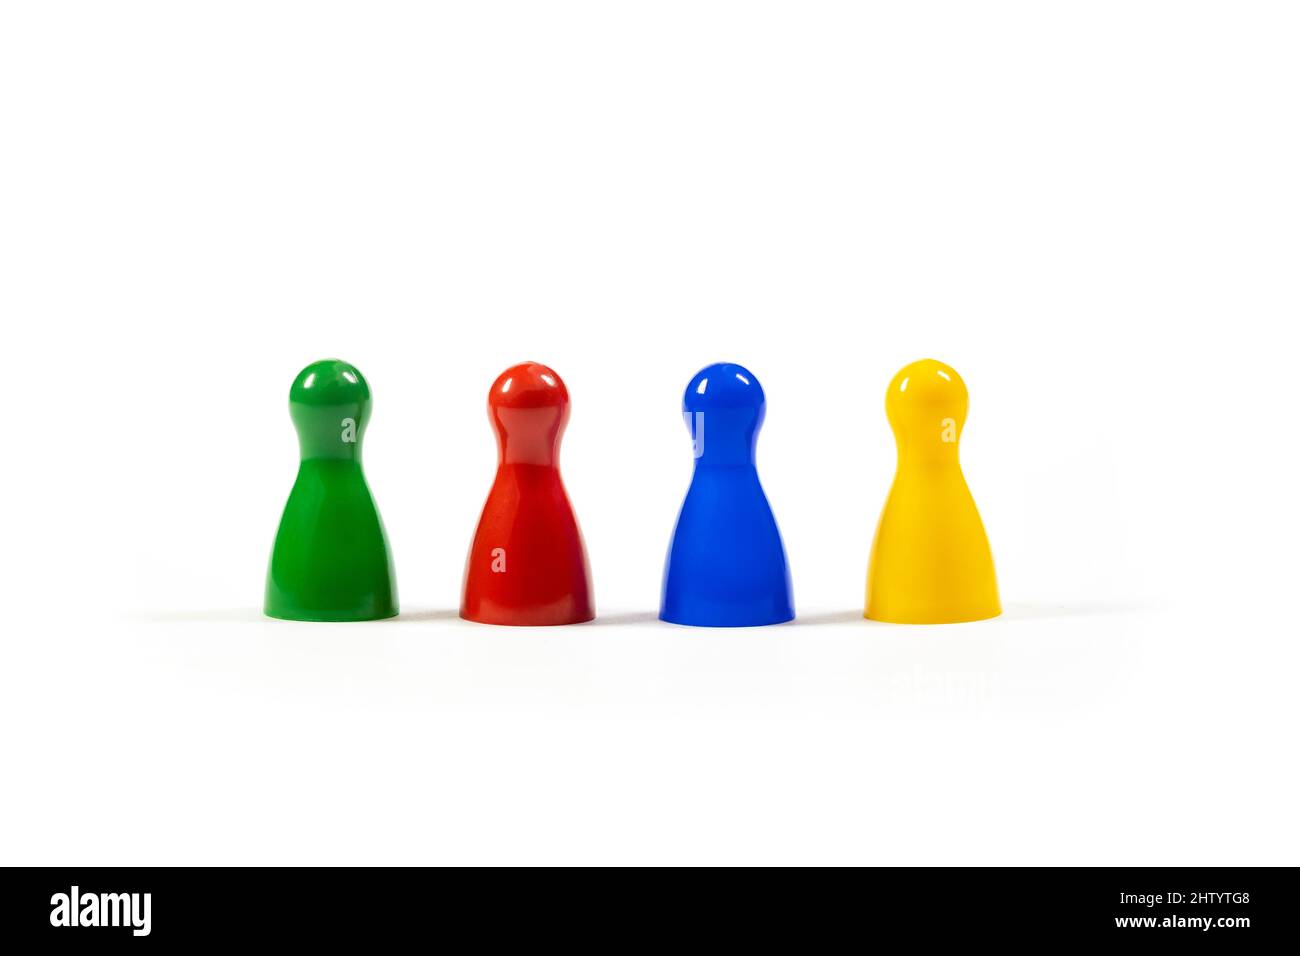 Reihe von 4 verschiedenen bunten Spielfiguren, die eine vielfältige Gruppe von Menschen, Teamwork, Vielfalt und Gemeinwohl von Unternehmensunternehmen repräsentieren Stockfoto